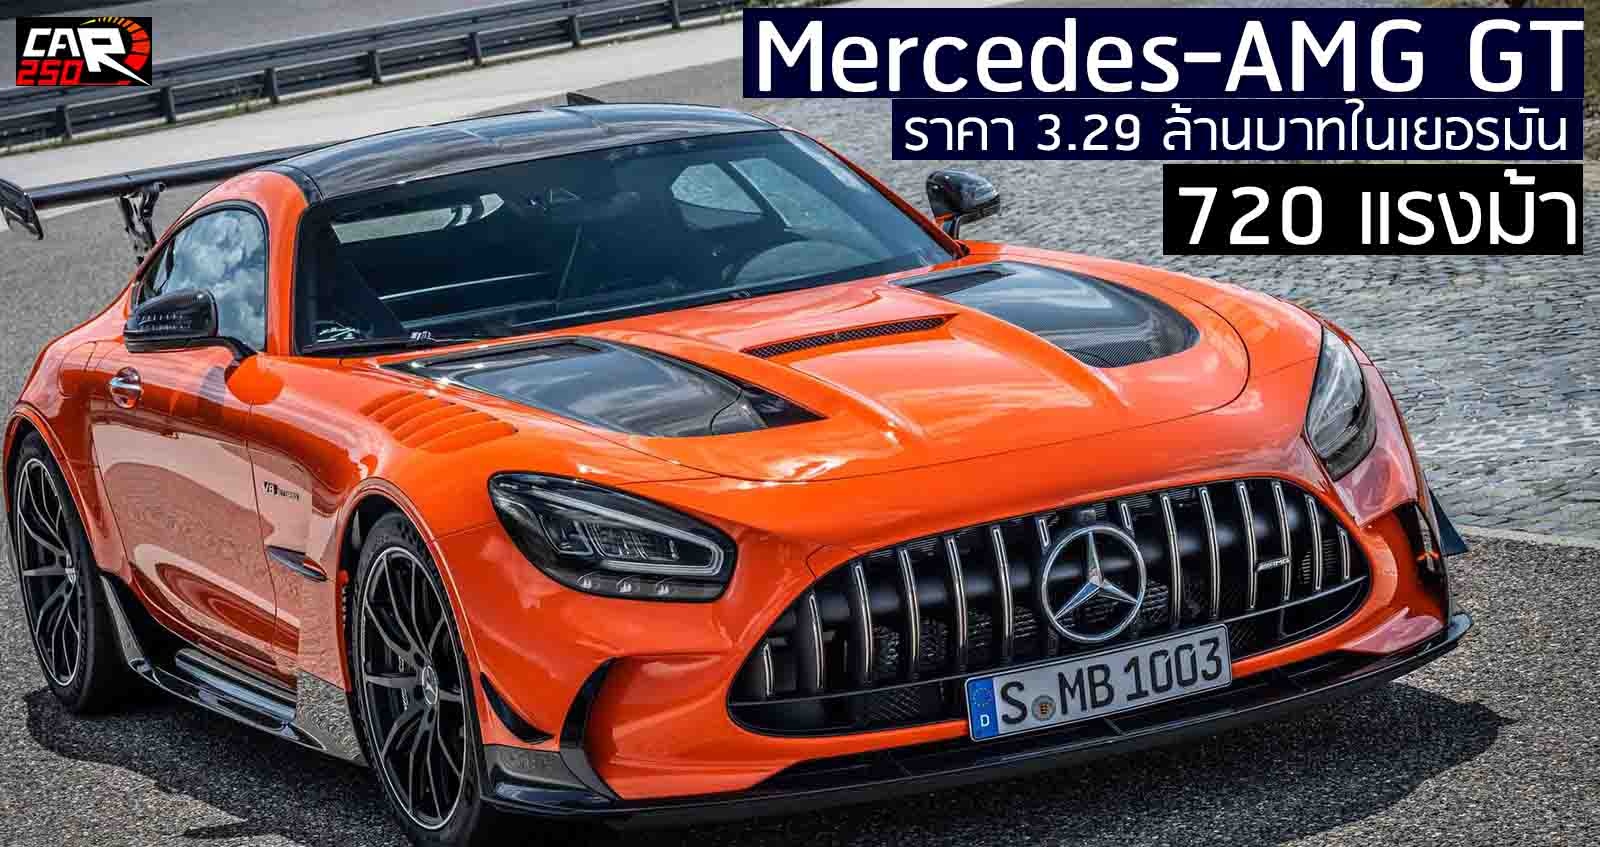 เปิดราคา Mercedes-AMG GT  3.29 ล้านบาท 720 แรงม้า ตัวแรงสุดของ AMG ในเยอรมัน